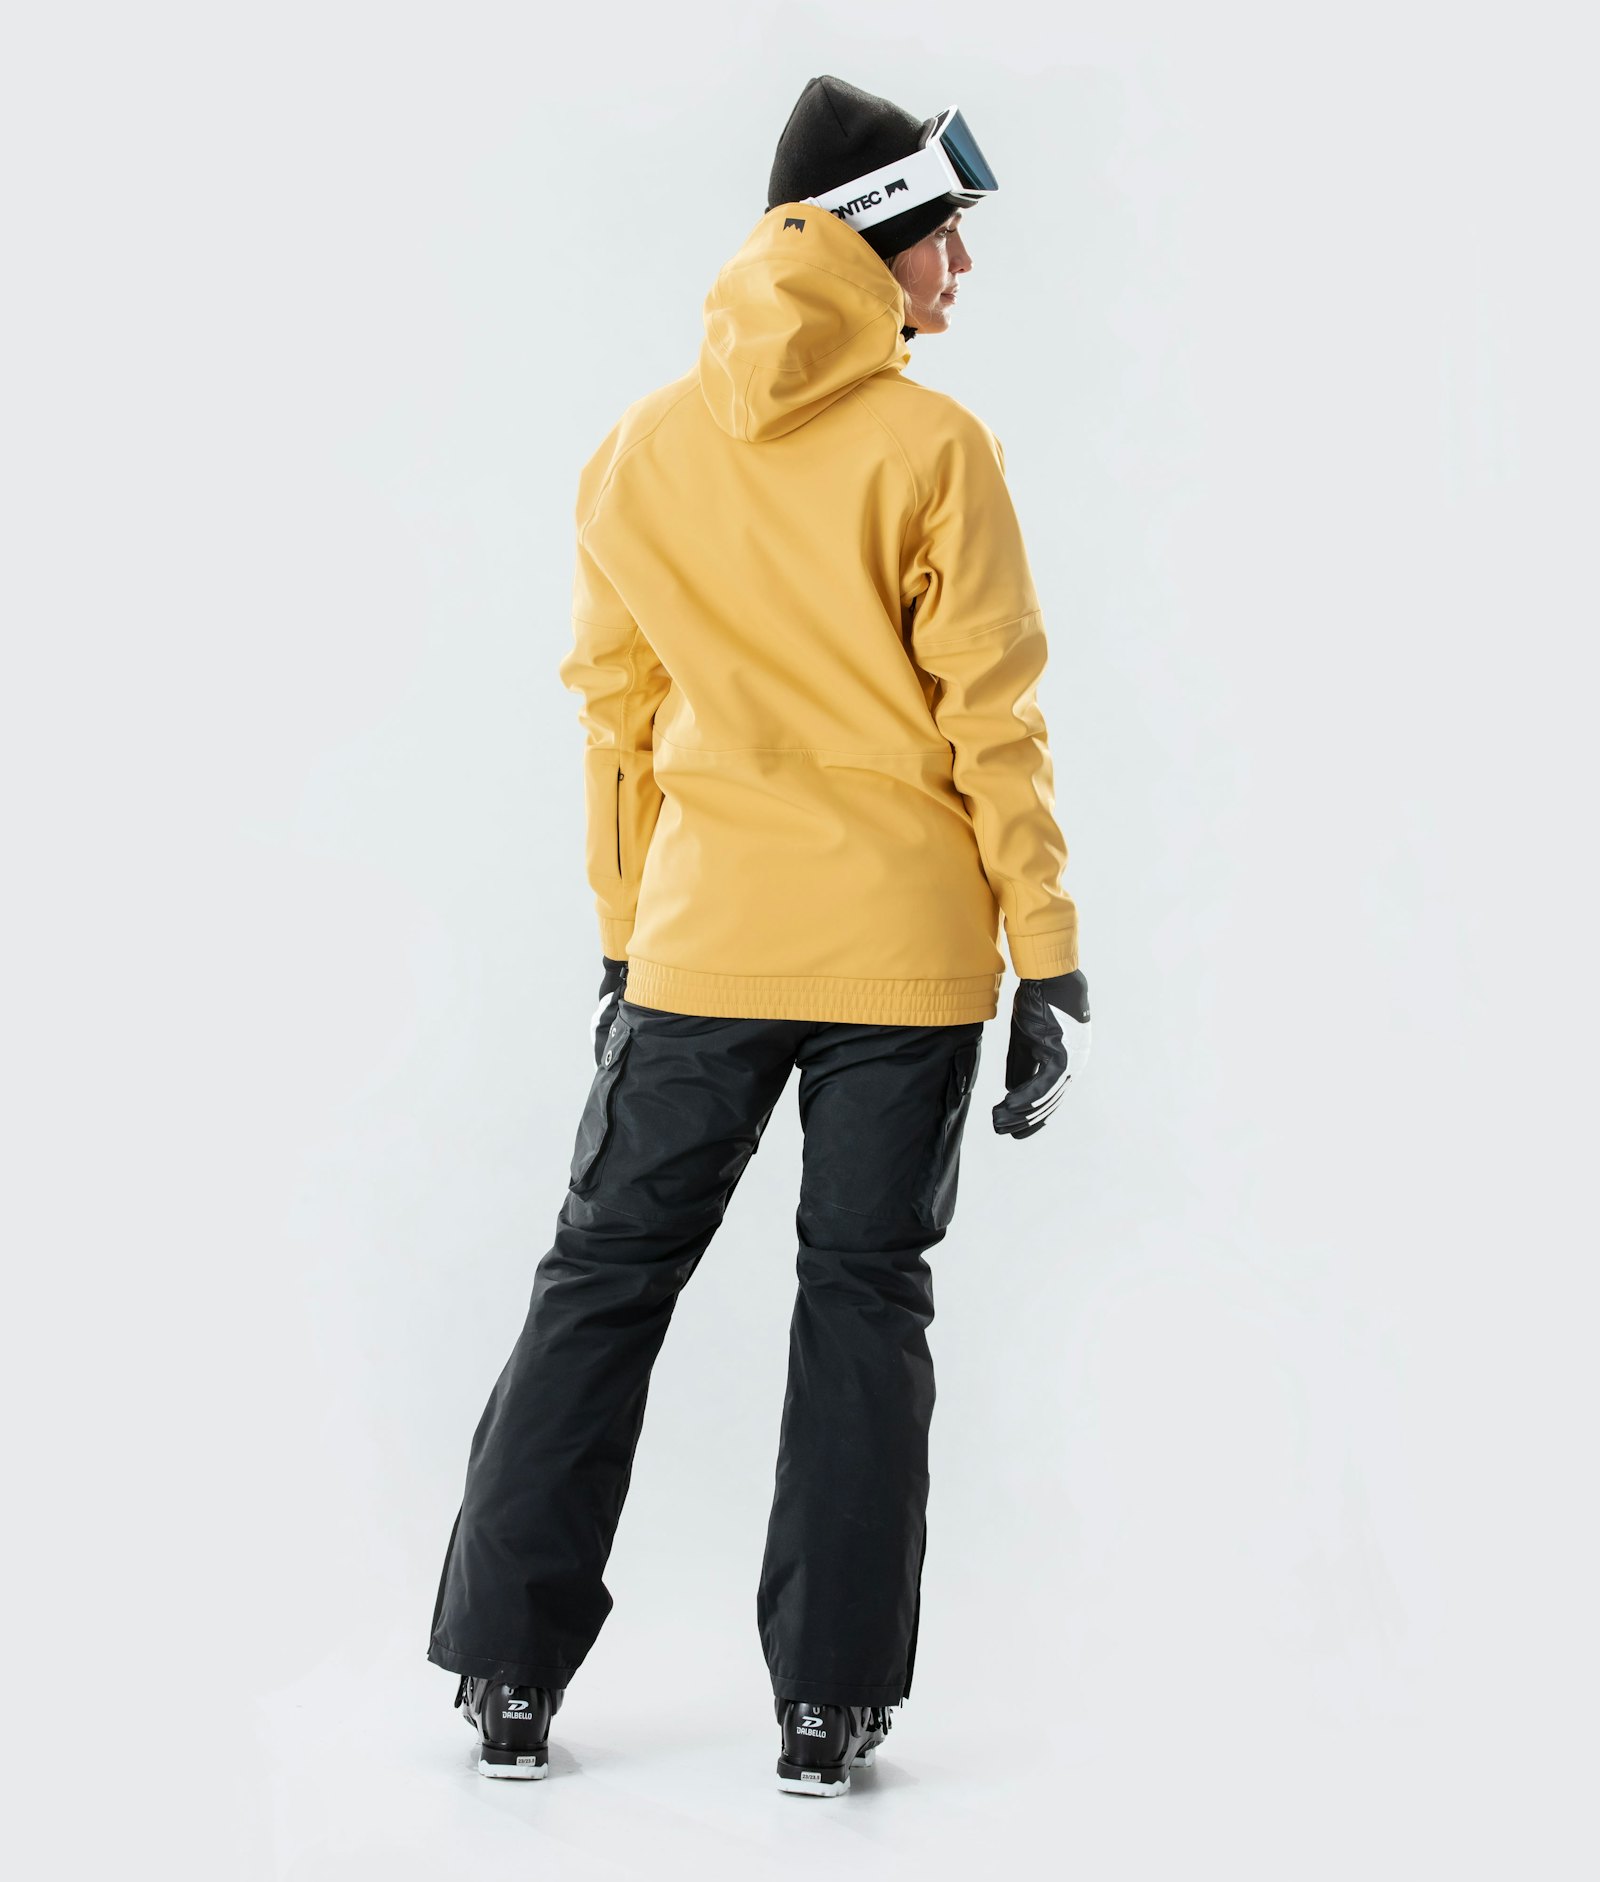 Montec Tempest W 2020 Ski Jacket Women Yellow